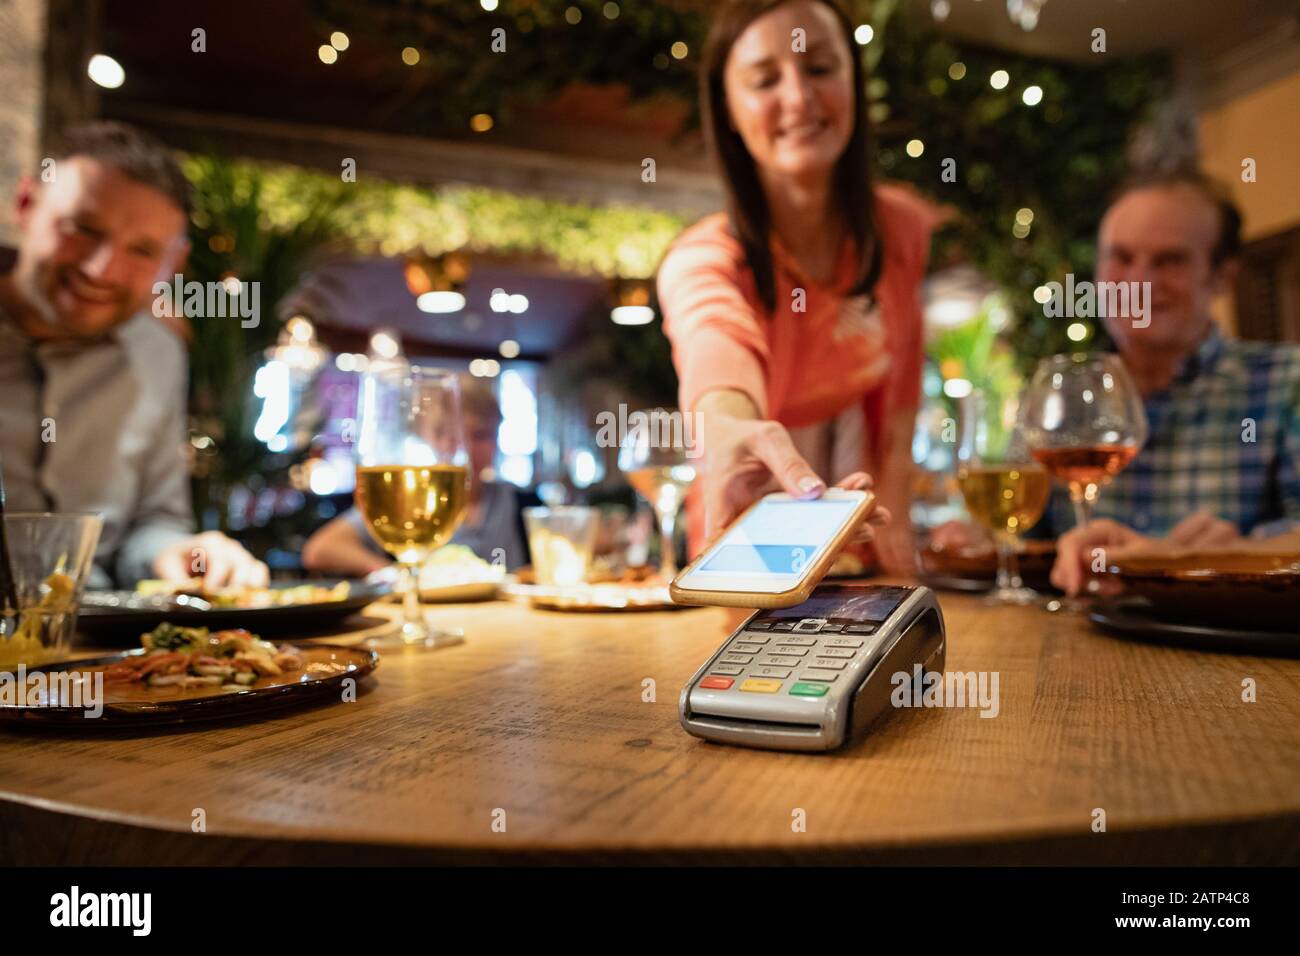 Eine Frau, die eine Mahlzeit mit kontaktloser Zahlung über ihr Telefon bezahlt. Stockfoto